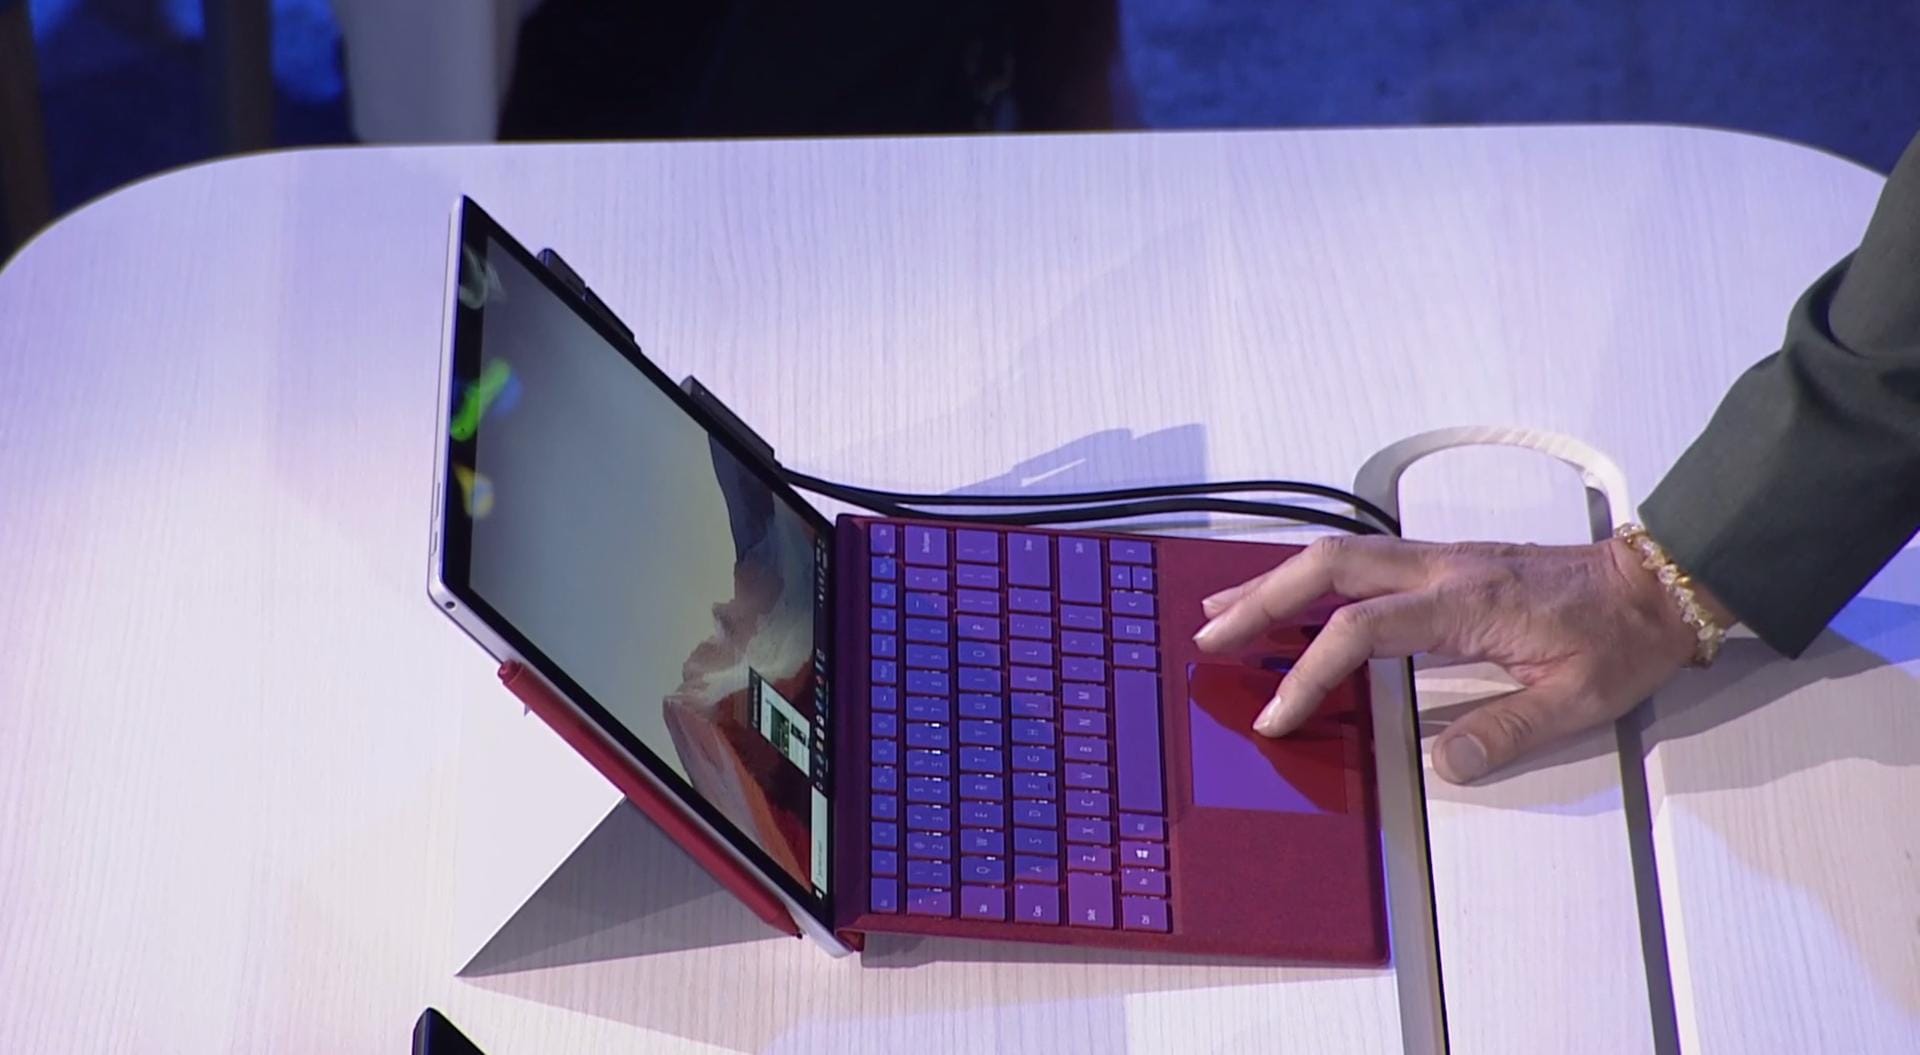 Auch zeigte Microsoft sein neues 2-in-1-Gerät Surface Pro 7. Bei dem Rechner handelt es sich um ein Tablet mit einem Stift, den Nutzer eine Tastatur anschließen können. Nutzer sollen unter anderem einer verbesserten Eingabe mit dem Stift in Programmen wie Word oder Excel profitieren. Die Geräte verfügen nun über einen USB-C-Eingang und verbesserte Mikrofone, so dass Sprachbefehle besser empfangen werden können. Das Gerät ist ab dem 22. Oktober verfügbar. Der Preis startet bei 749 Dollar.